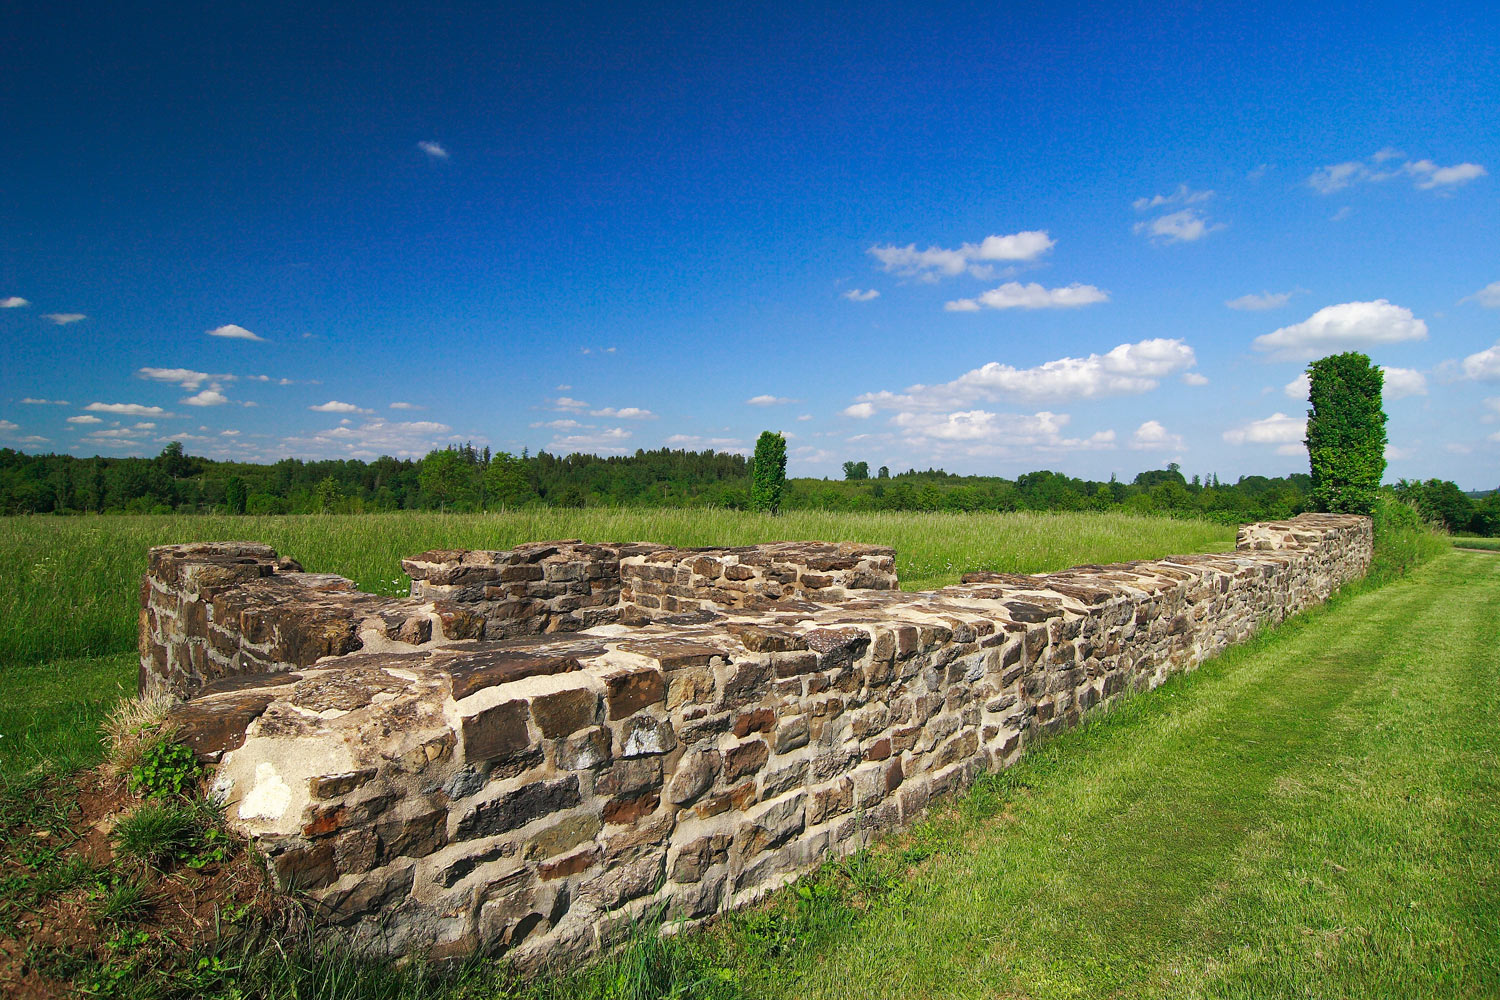 Kastelle, Wälle, Gräben, Steinmauern – die ehemalige Außengrenze des römischen Reichs ist als Bodendenkmal seit 2005 UNESCO-Weltkulturerbe.